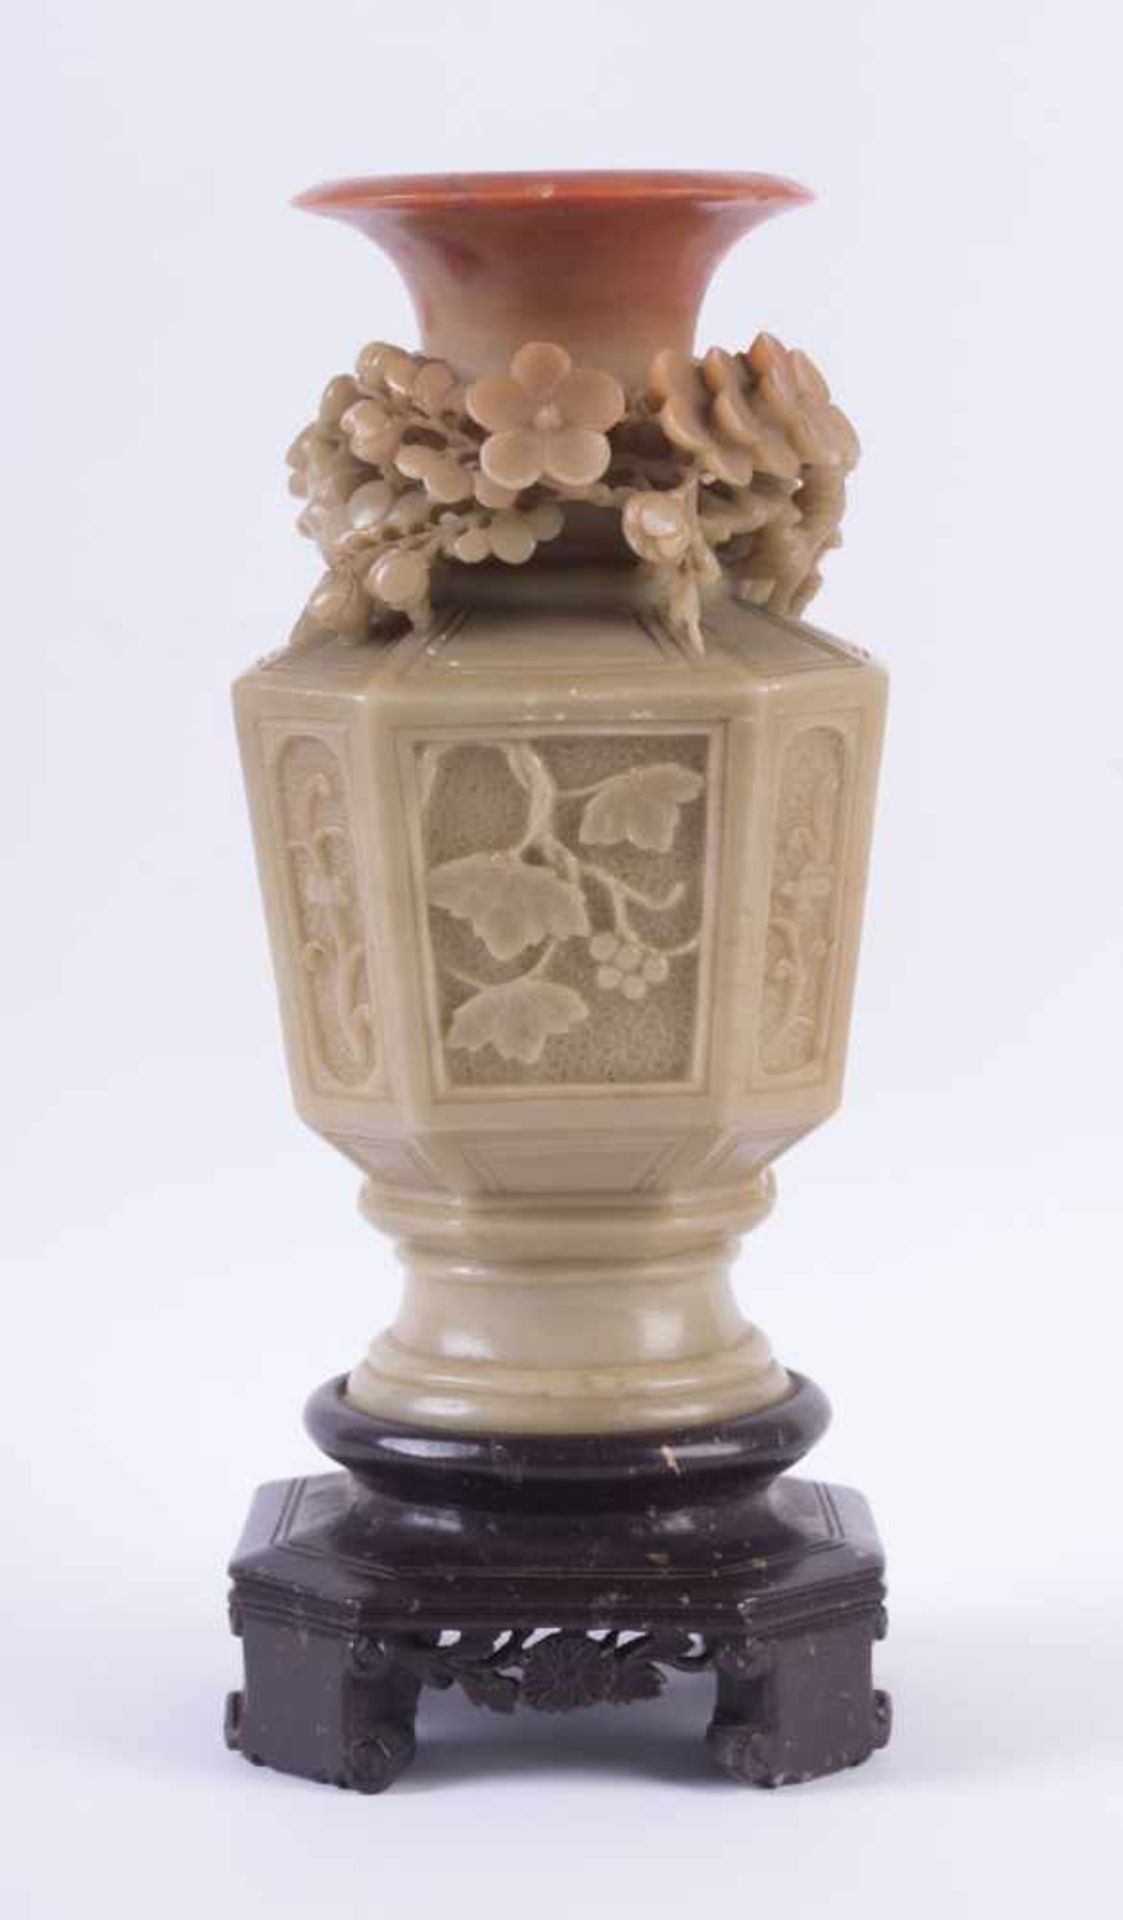 Specksteinvase China 18./19. Jhd.umlaufend sehr fein beschnitzt mit teils vollplastischem floralen - Bild 2 aus 5